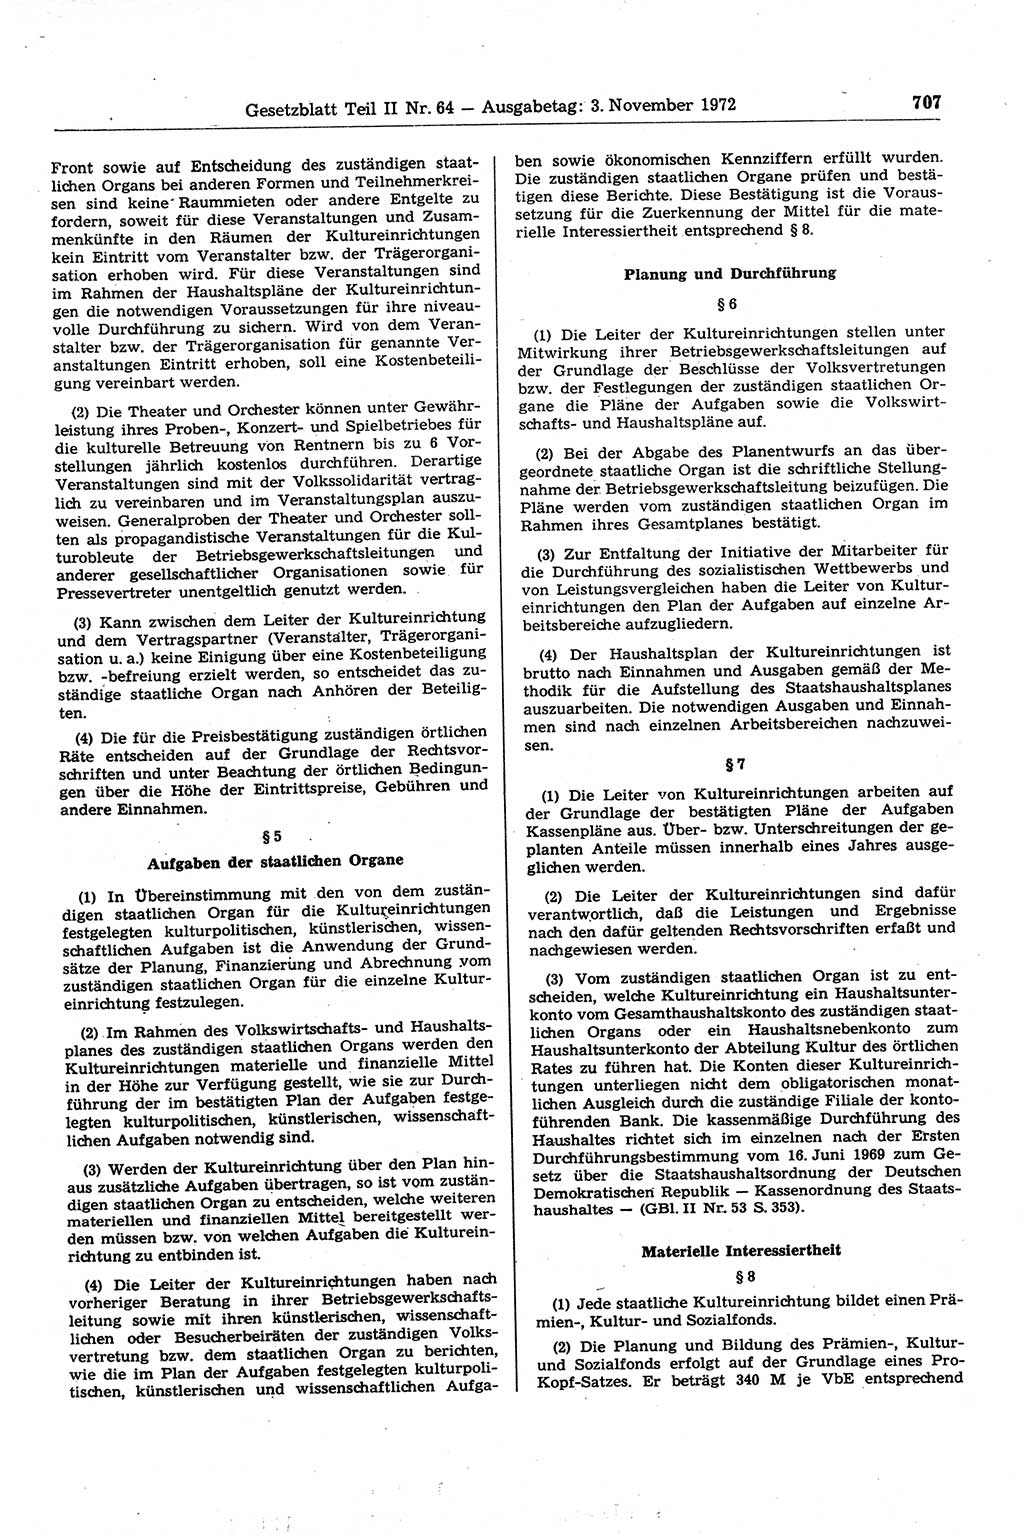 Gesetzblatt (GBl.) der Deutschen Demokratischen Republik (DDR) Teil ⅠⅠ 1972, Seite 707 (GBl. DDR ⅠⅠ 1972, S. 707)